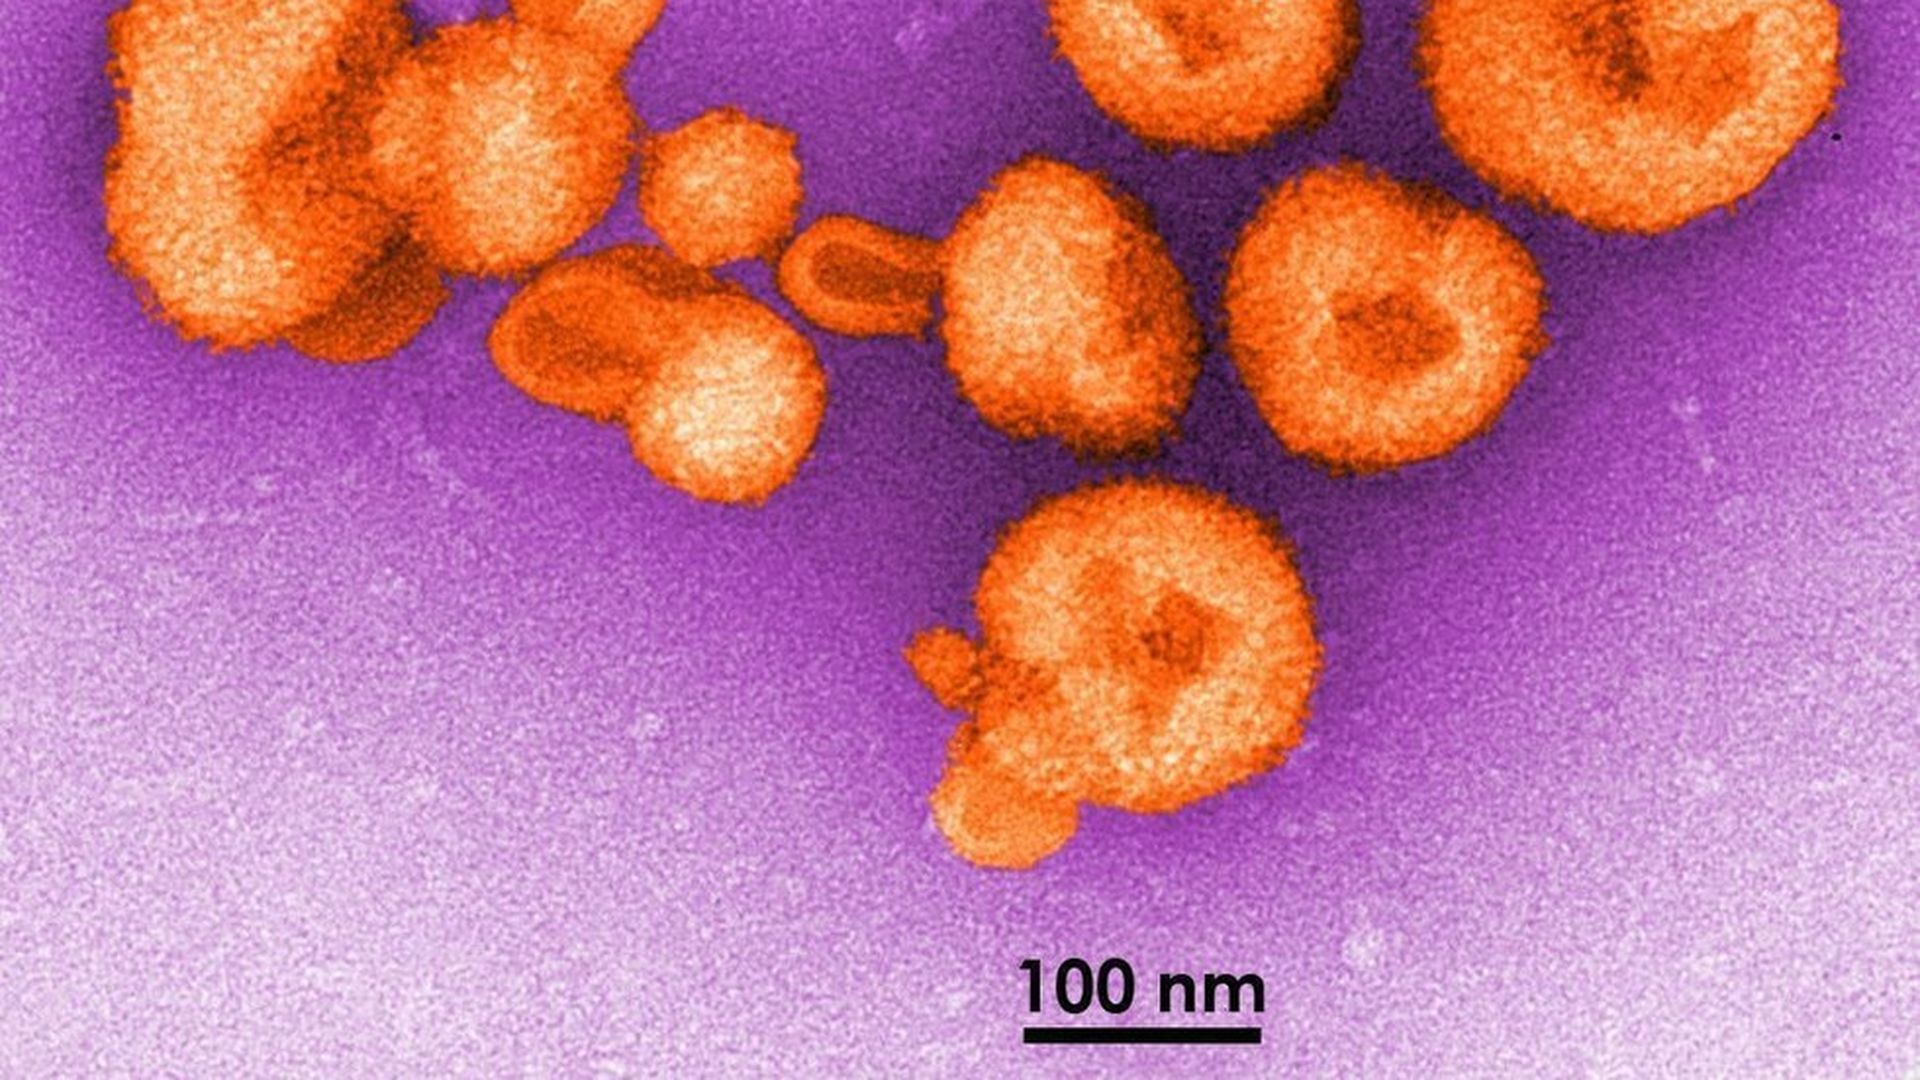 Scientists develop blueprint for vaccine against deadly Lassa virus